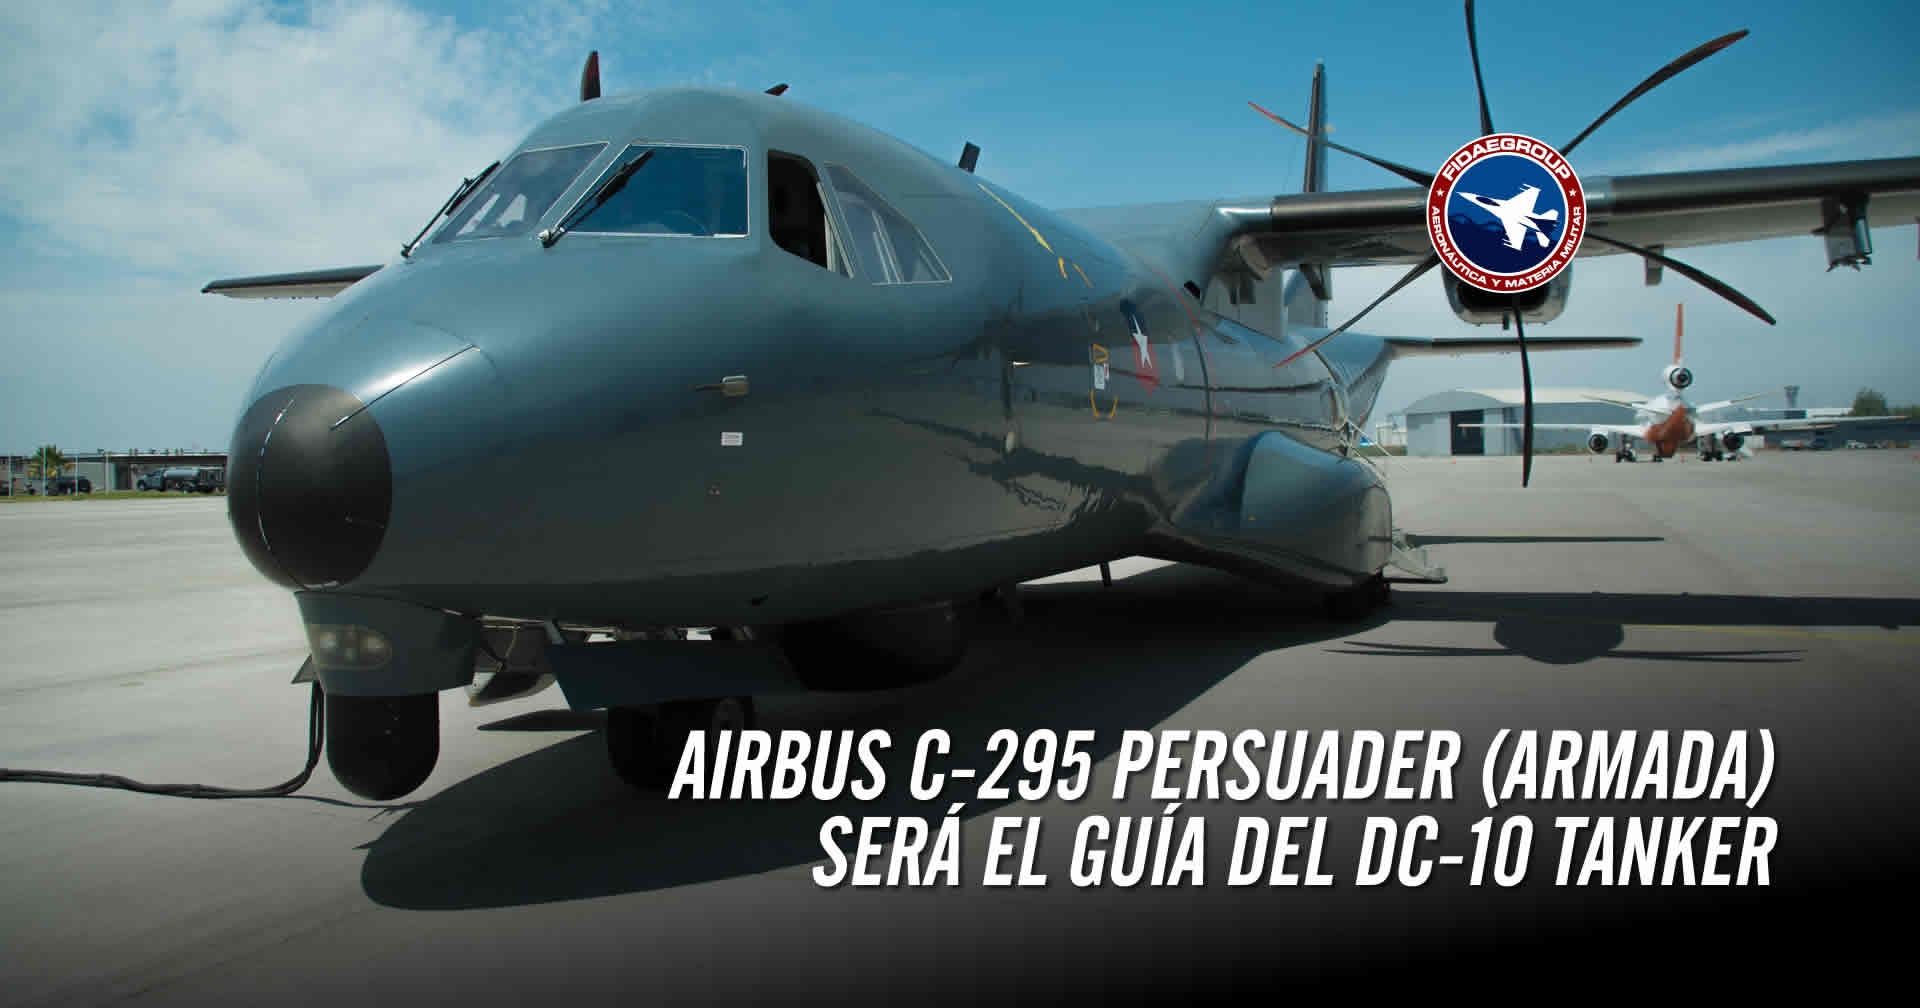 Aeronave P-295 será el guía del 10 Air Tanker